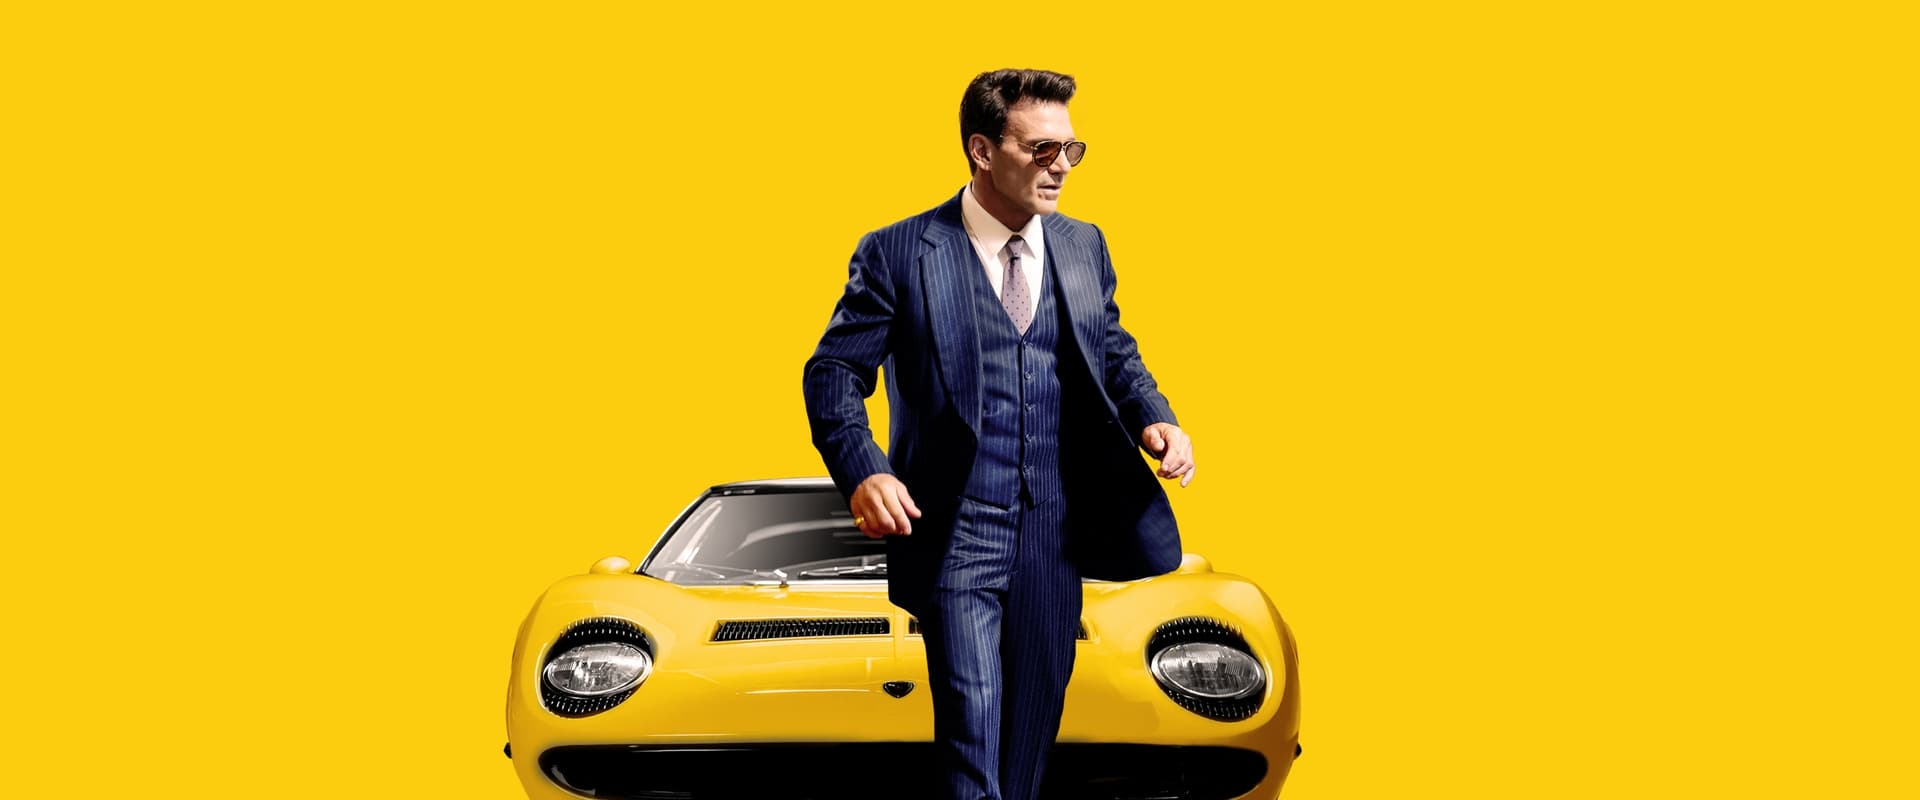 Lamborghini: Człowiek, który stworzył legendę